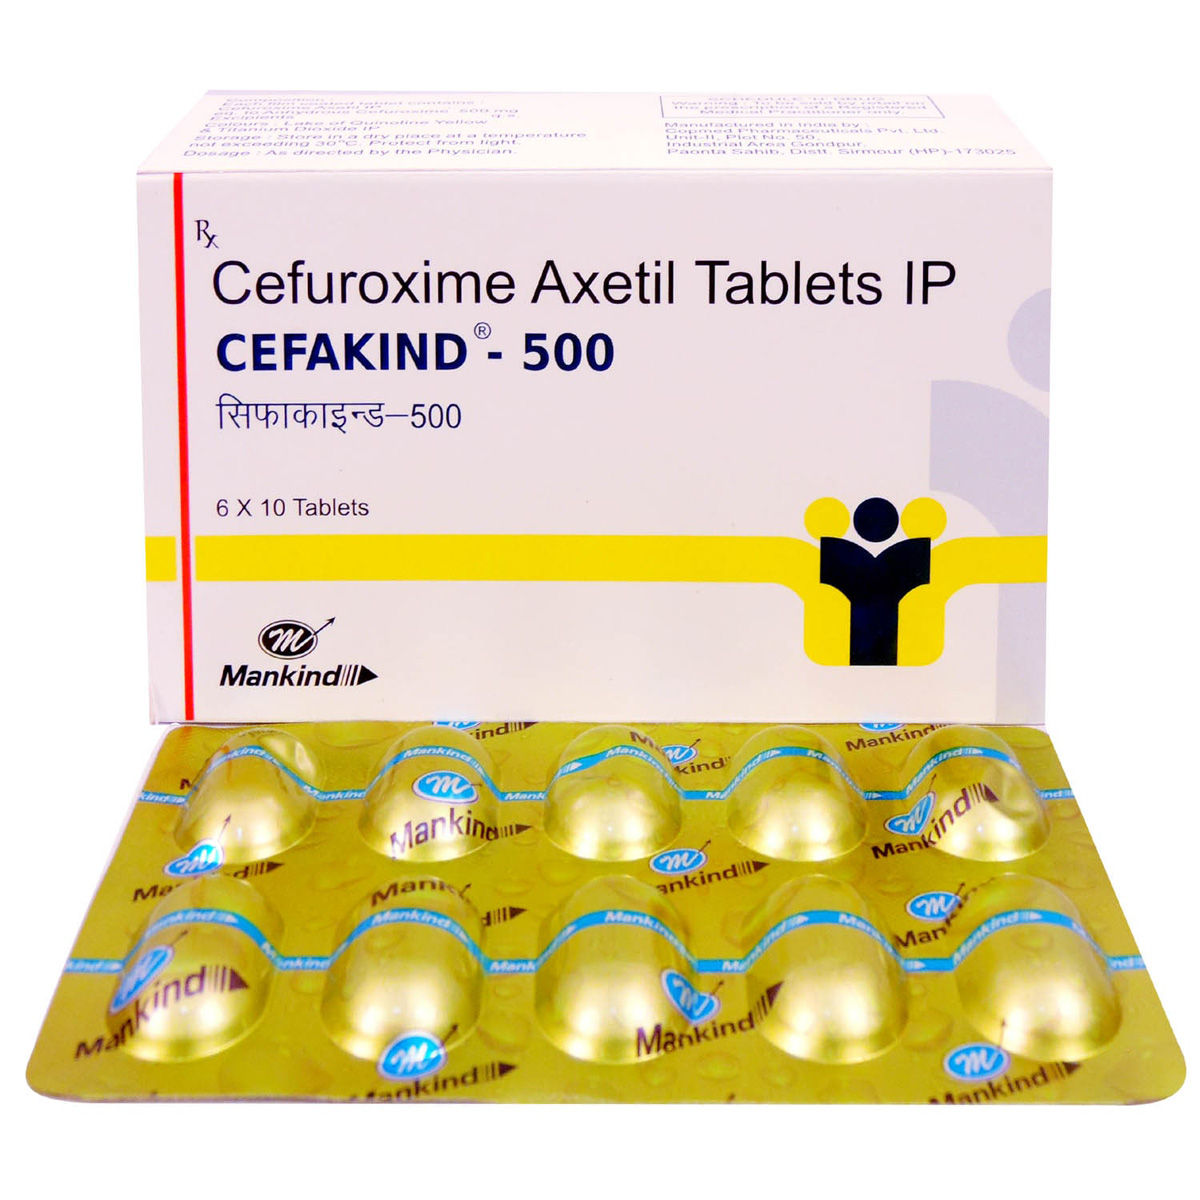 Cefakind-500 Tablet 10's, Pack of 10 TABLETS